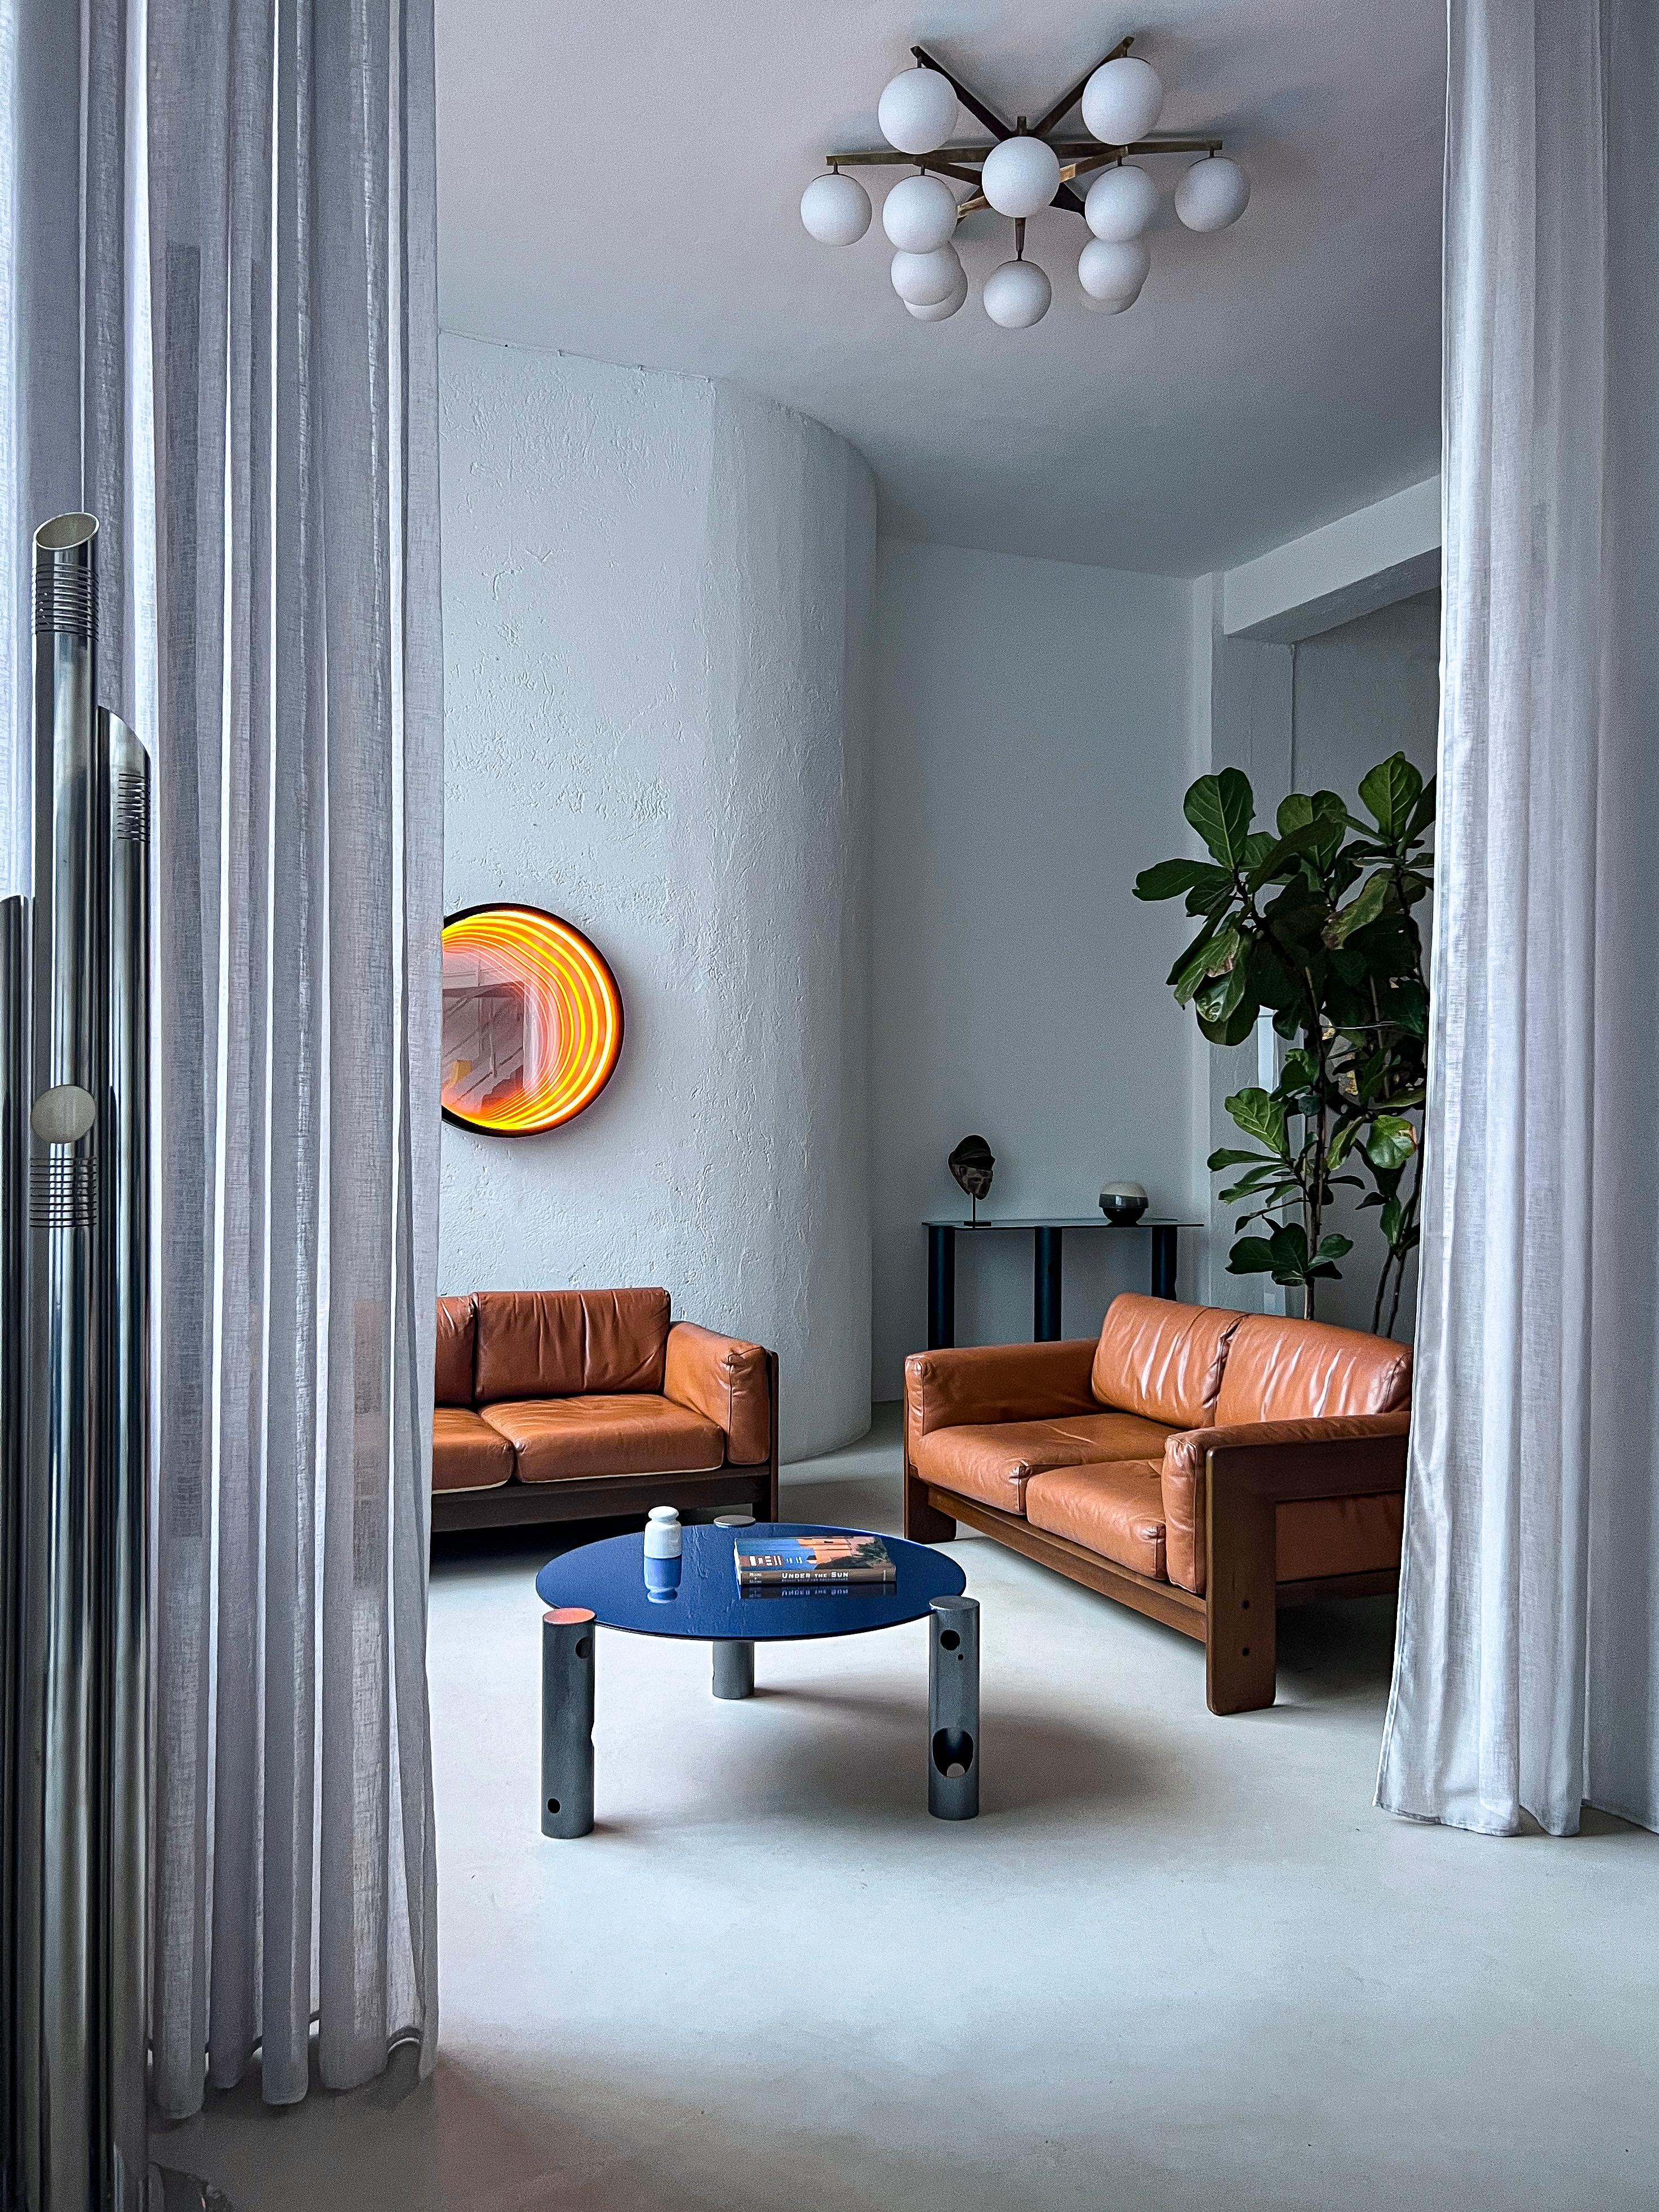 Conçu par Afra et Tobia Scarpa en 1962, Bastiano est un canapé sculptural qui exprime véritablement la philosophie du couple en matière de design. Leurs éléments de signature - cadre géométrique en bois, cuir souple, lignes essentielles mais